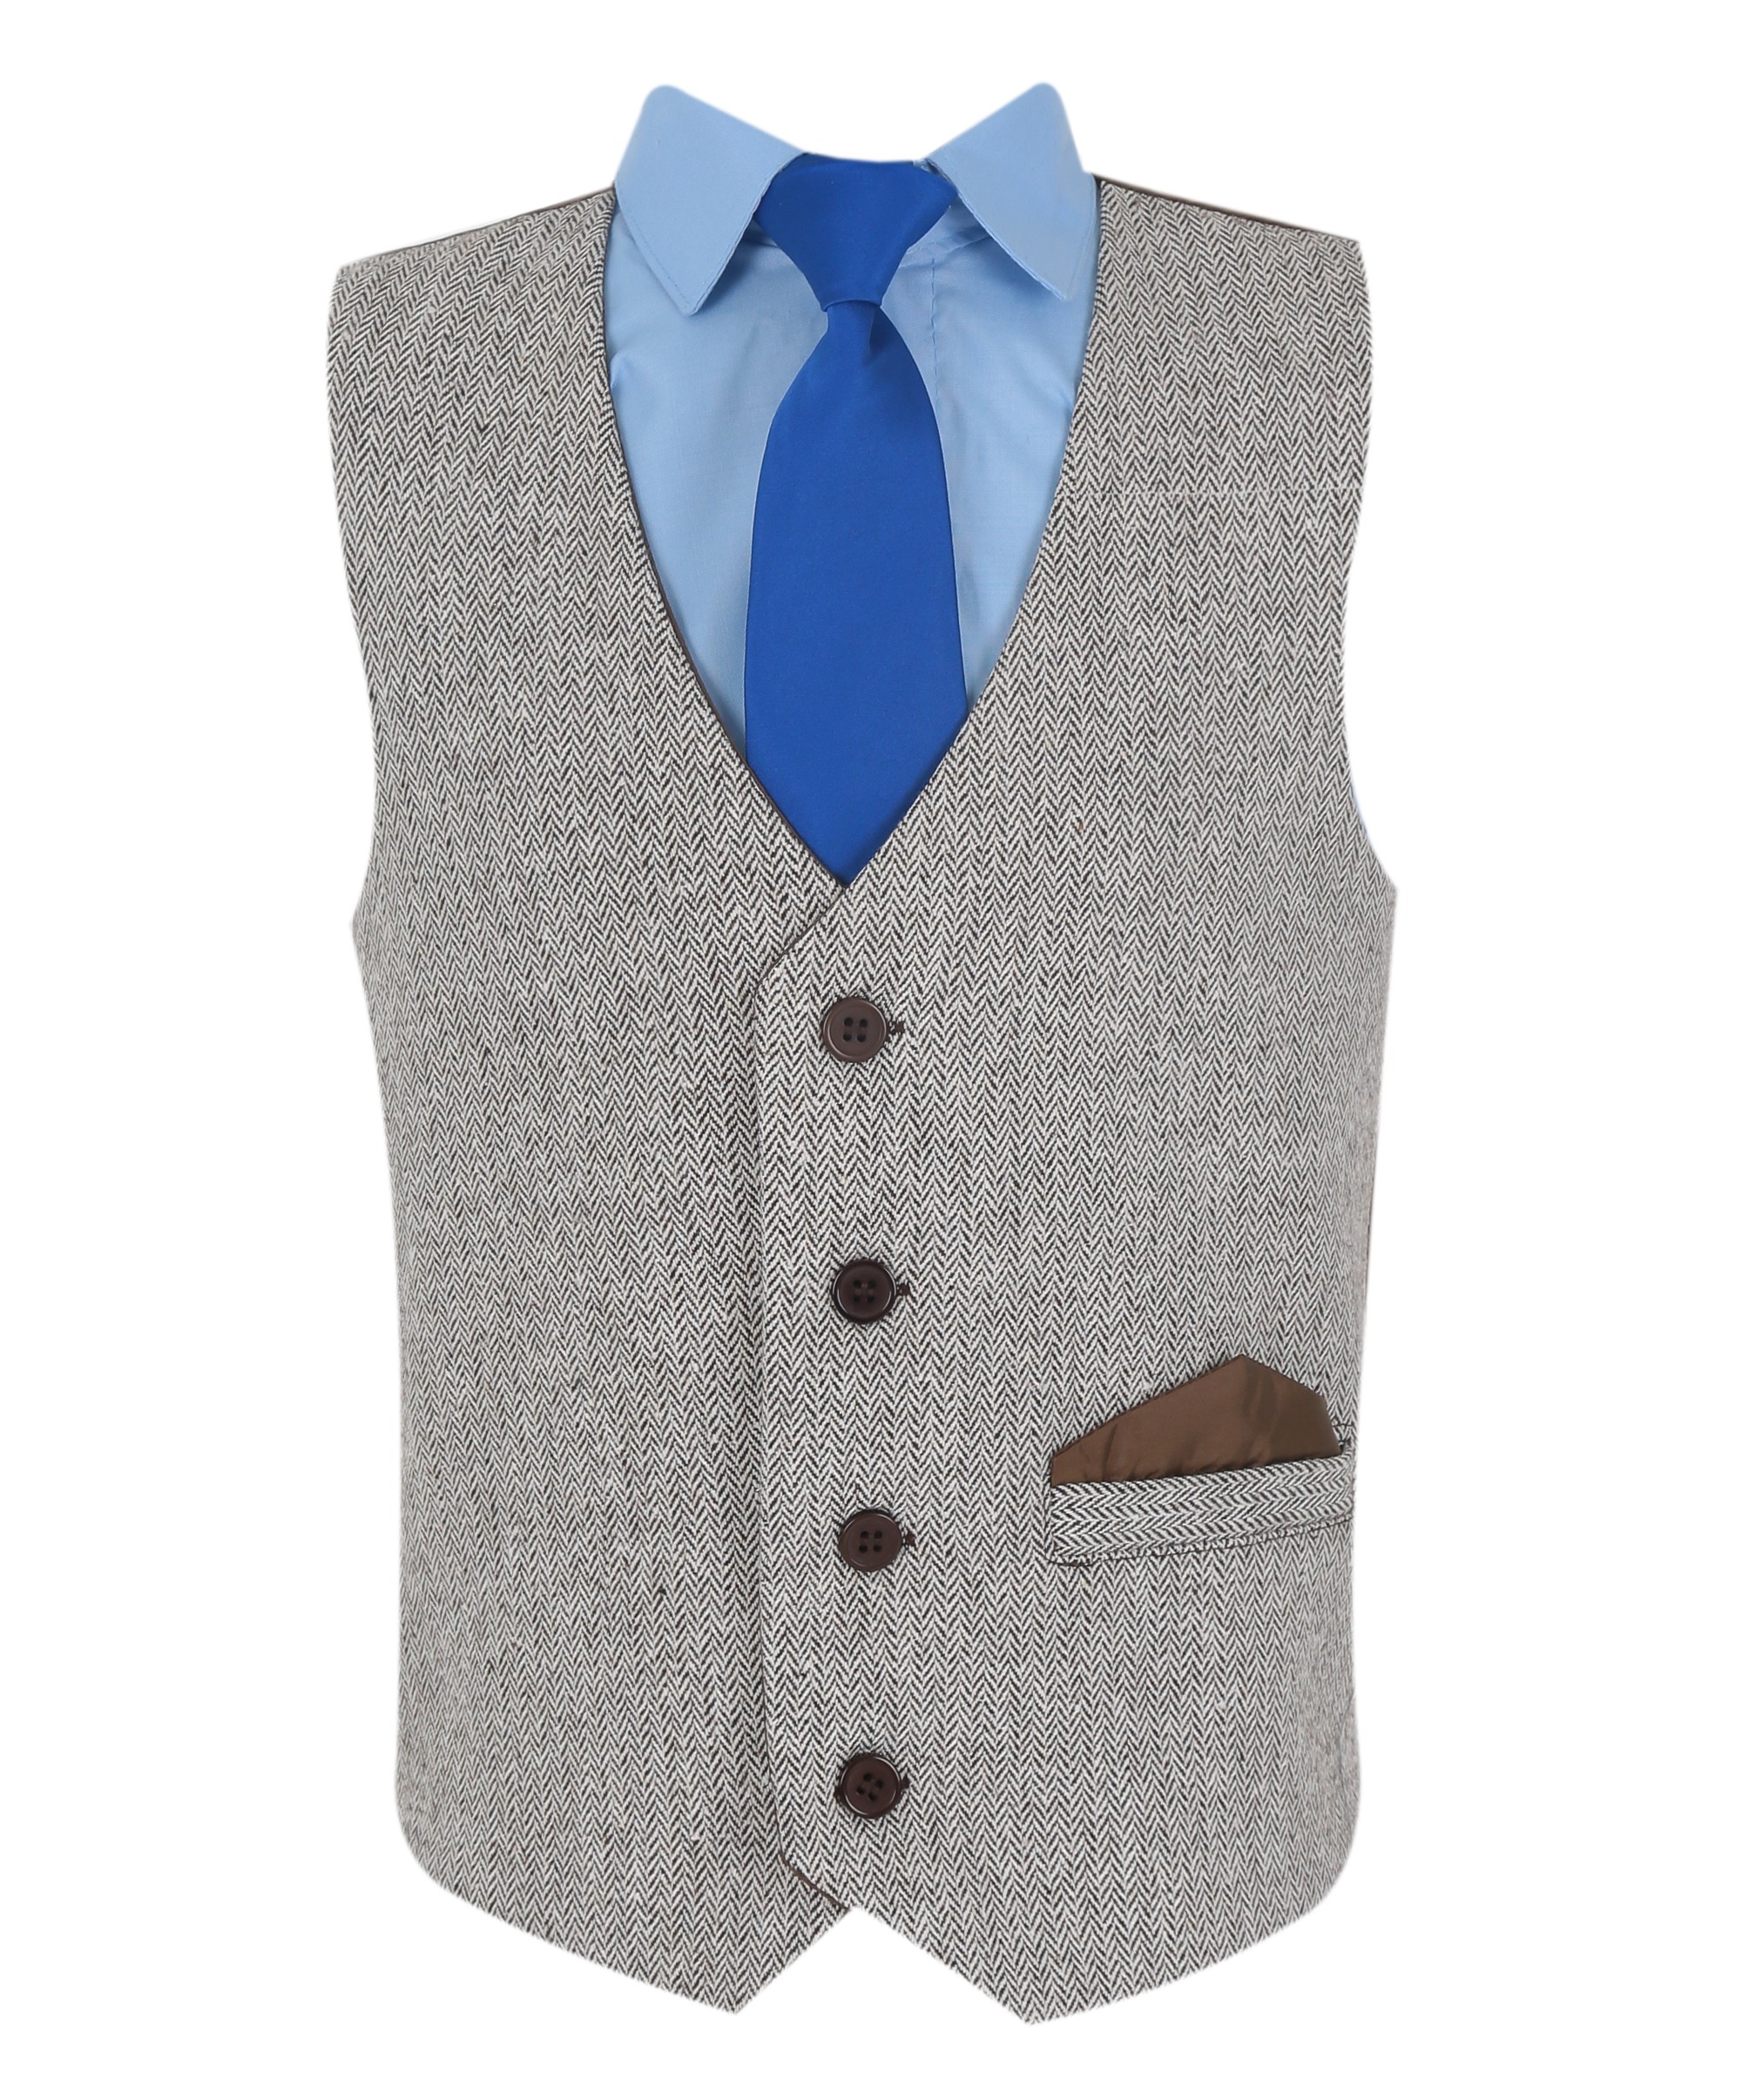 Boys Herringbone Tweed Waistcoat Suit Set - Light Brown